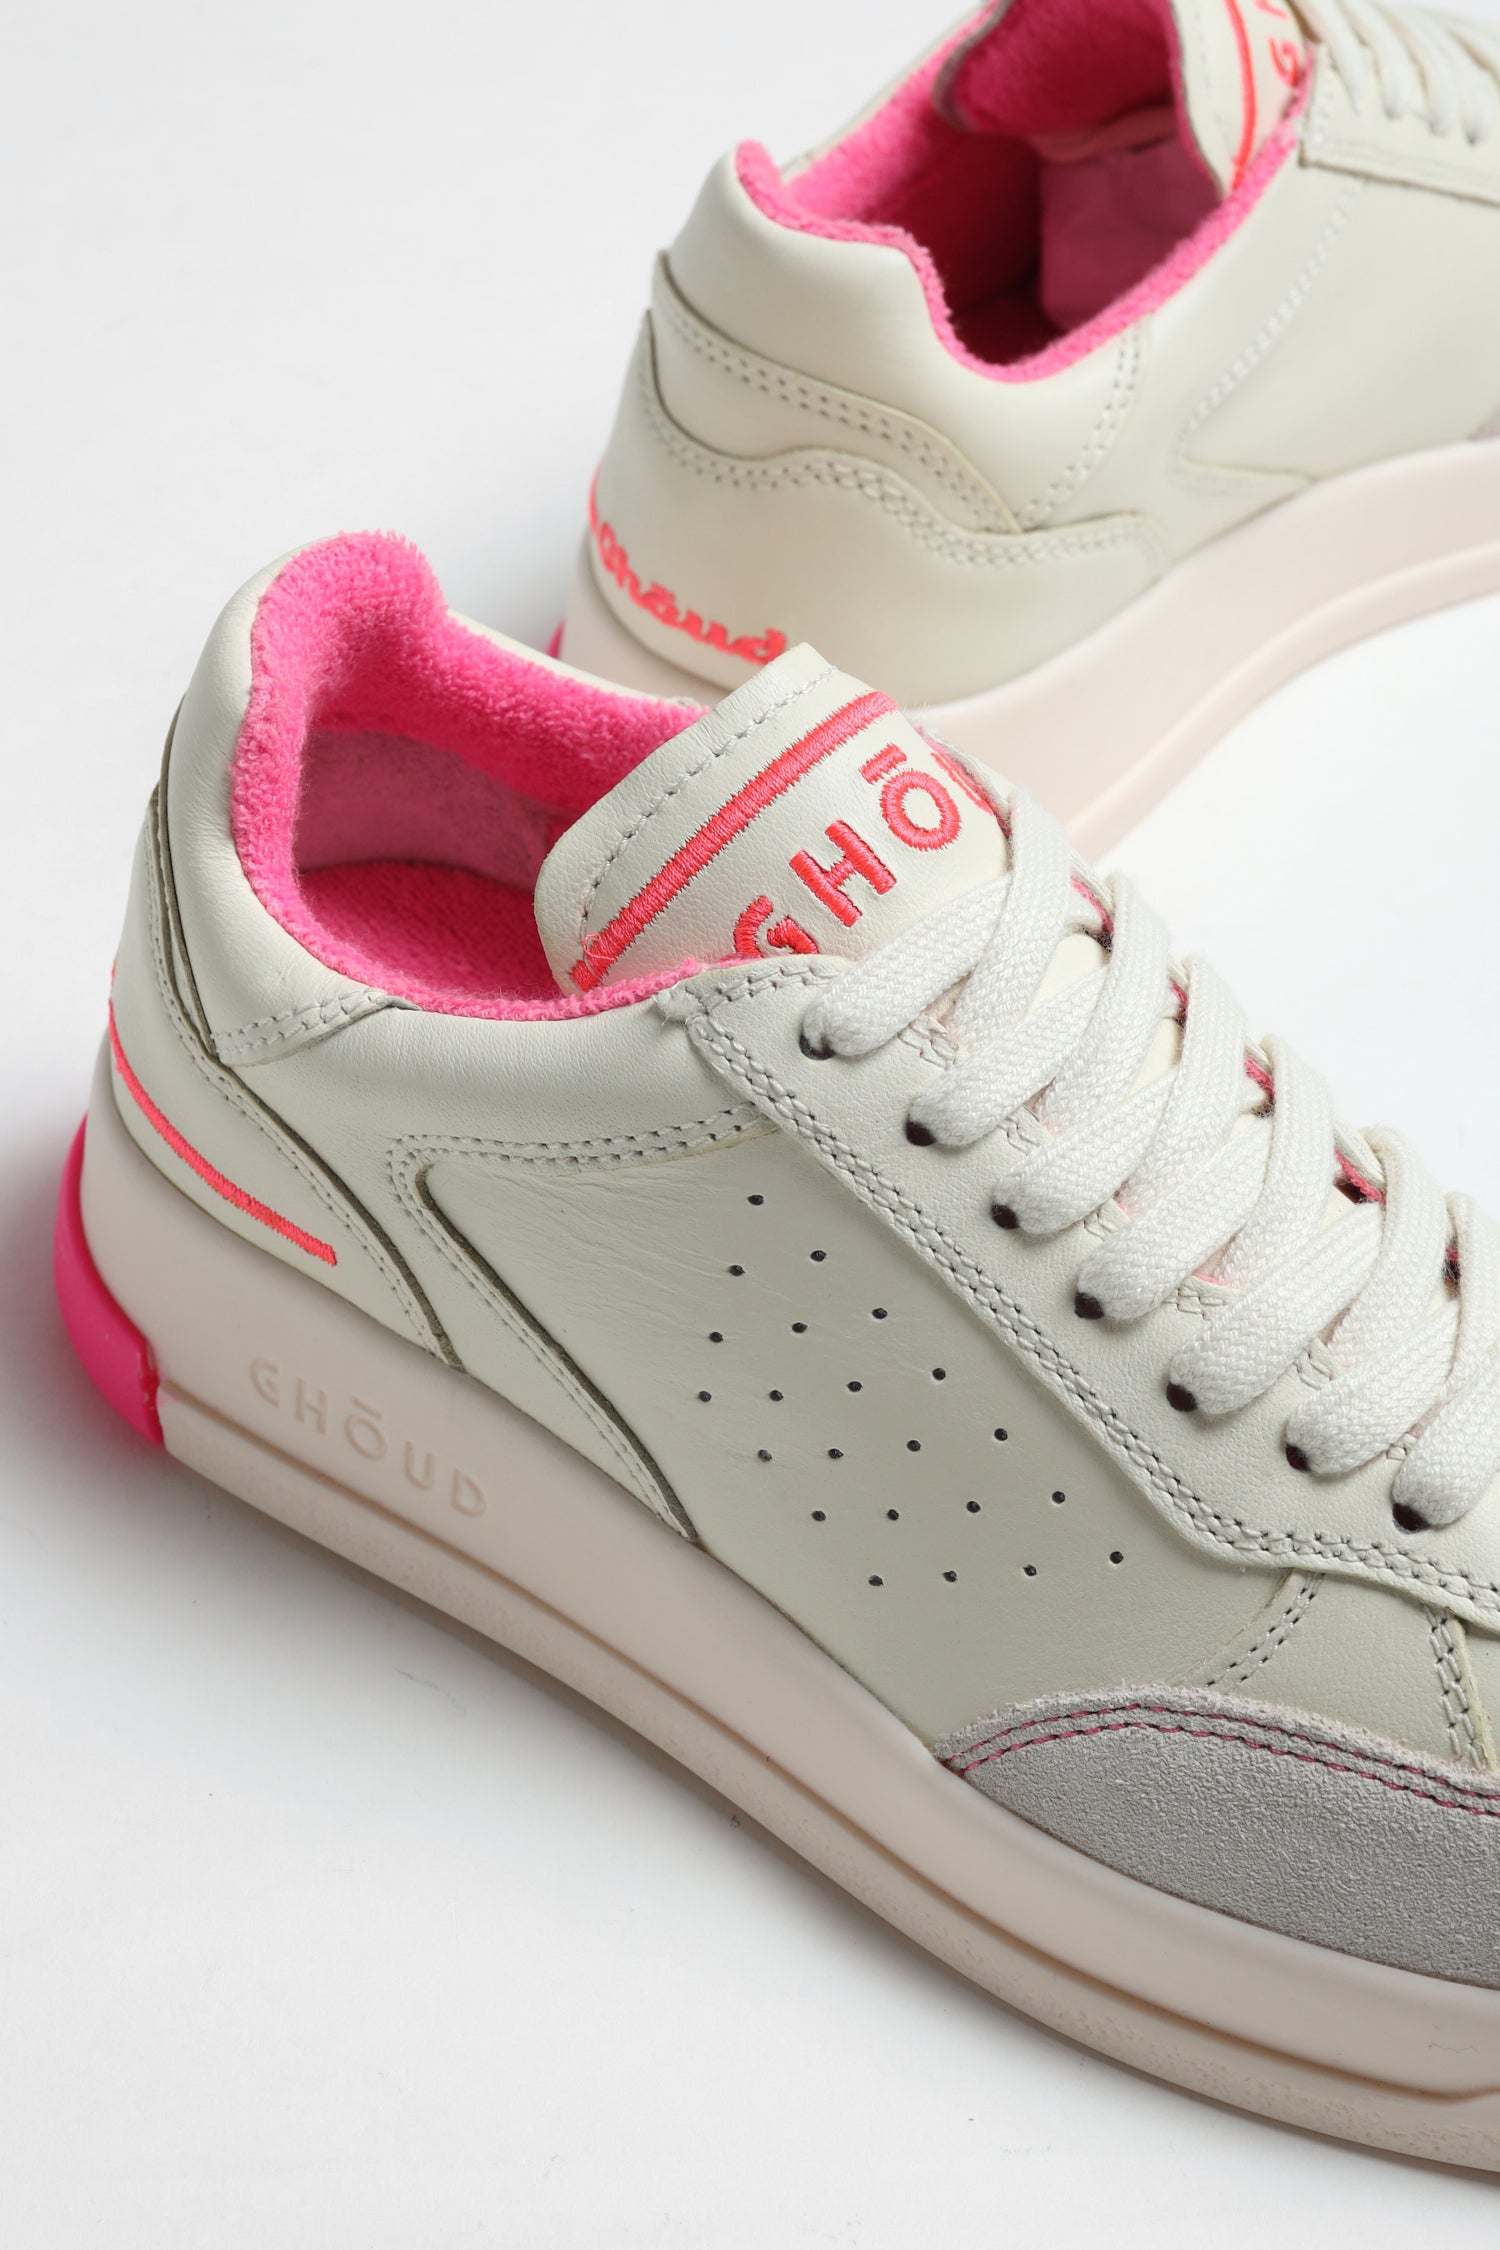 Sneaker Tweener in Cream/PinkGhoud - Anita Hass